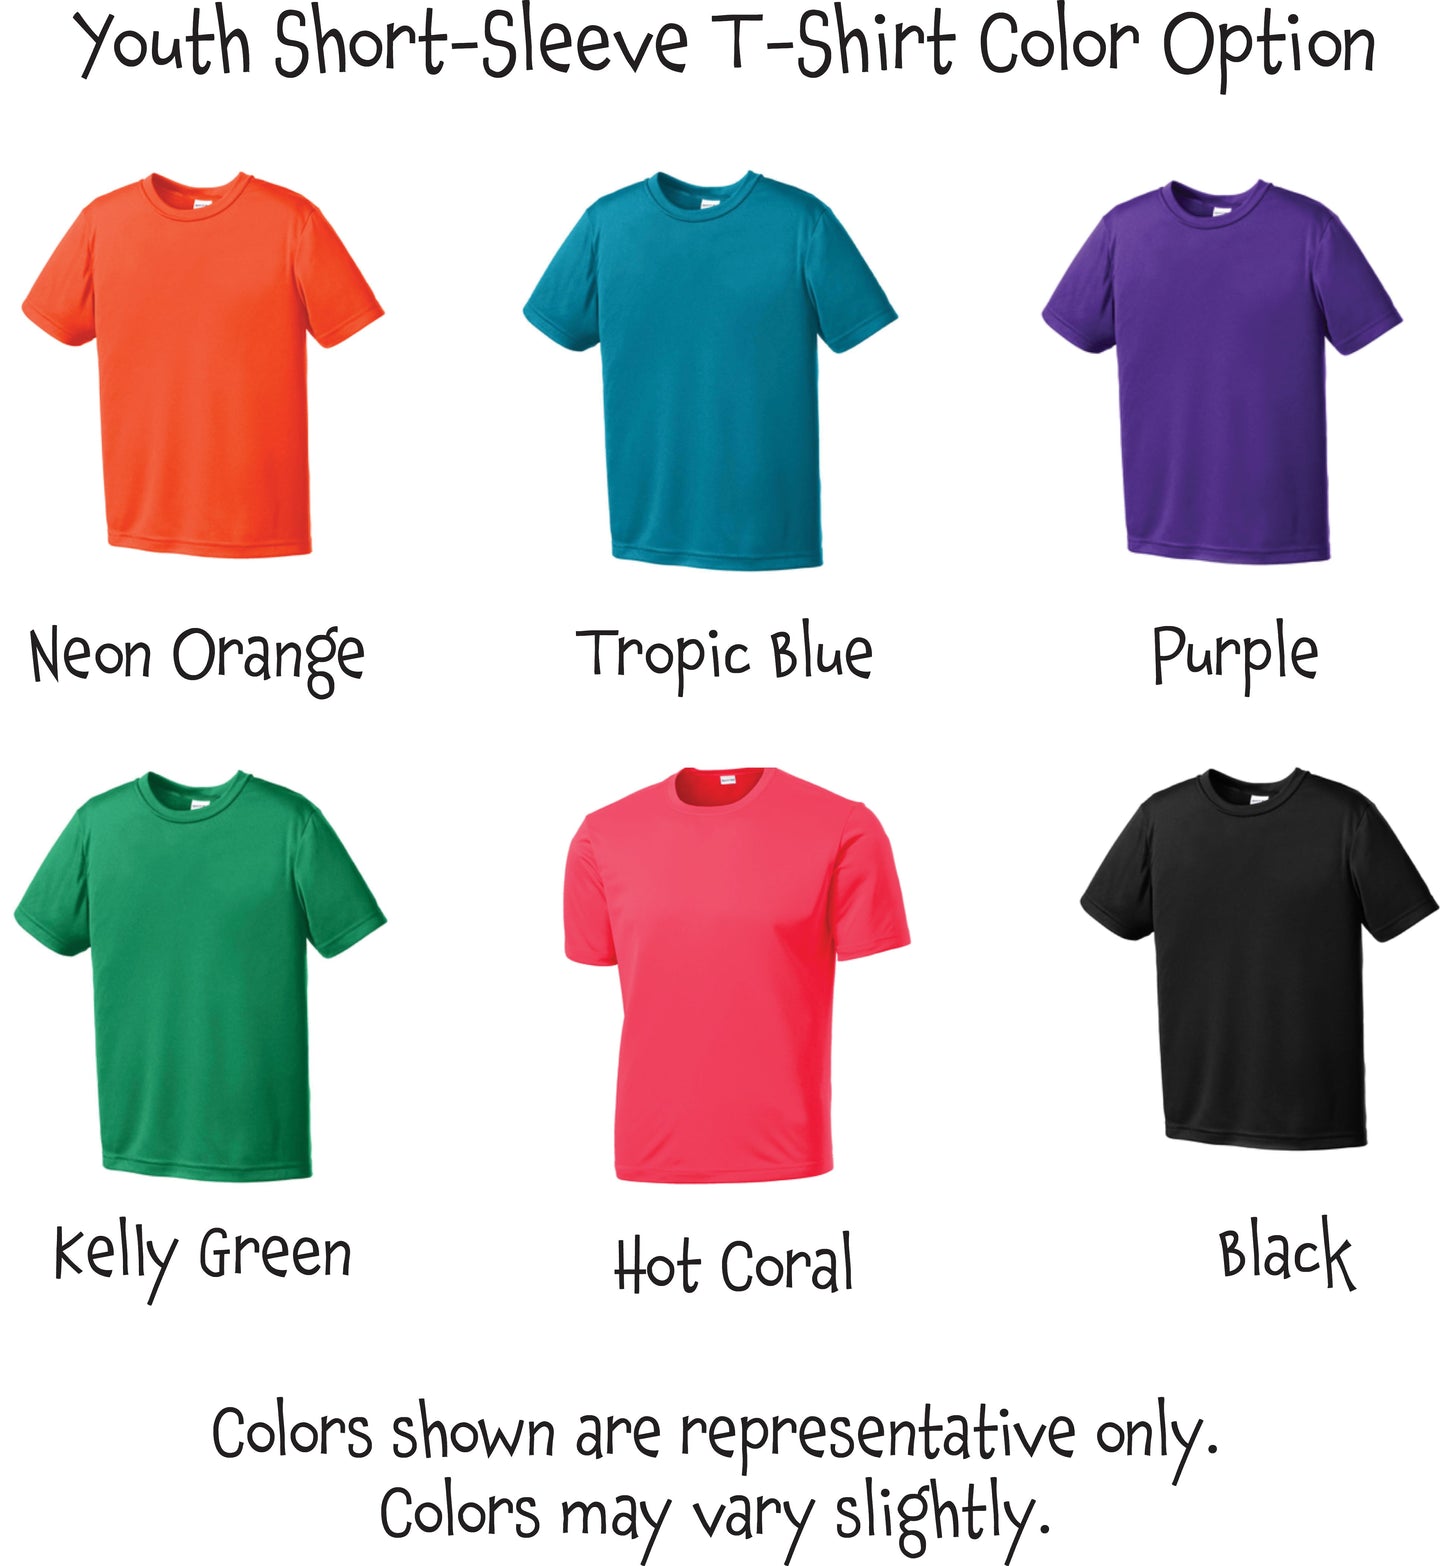 Pickleball Heart | Youth Short Sleeve Athletic Pickleball Shirt | 100% Polyester